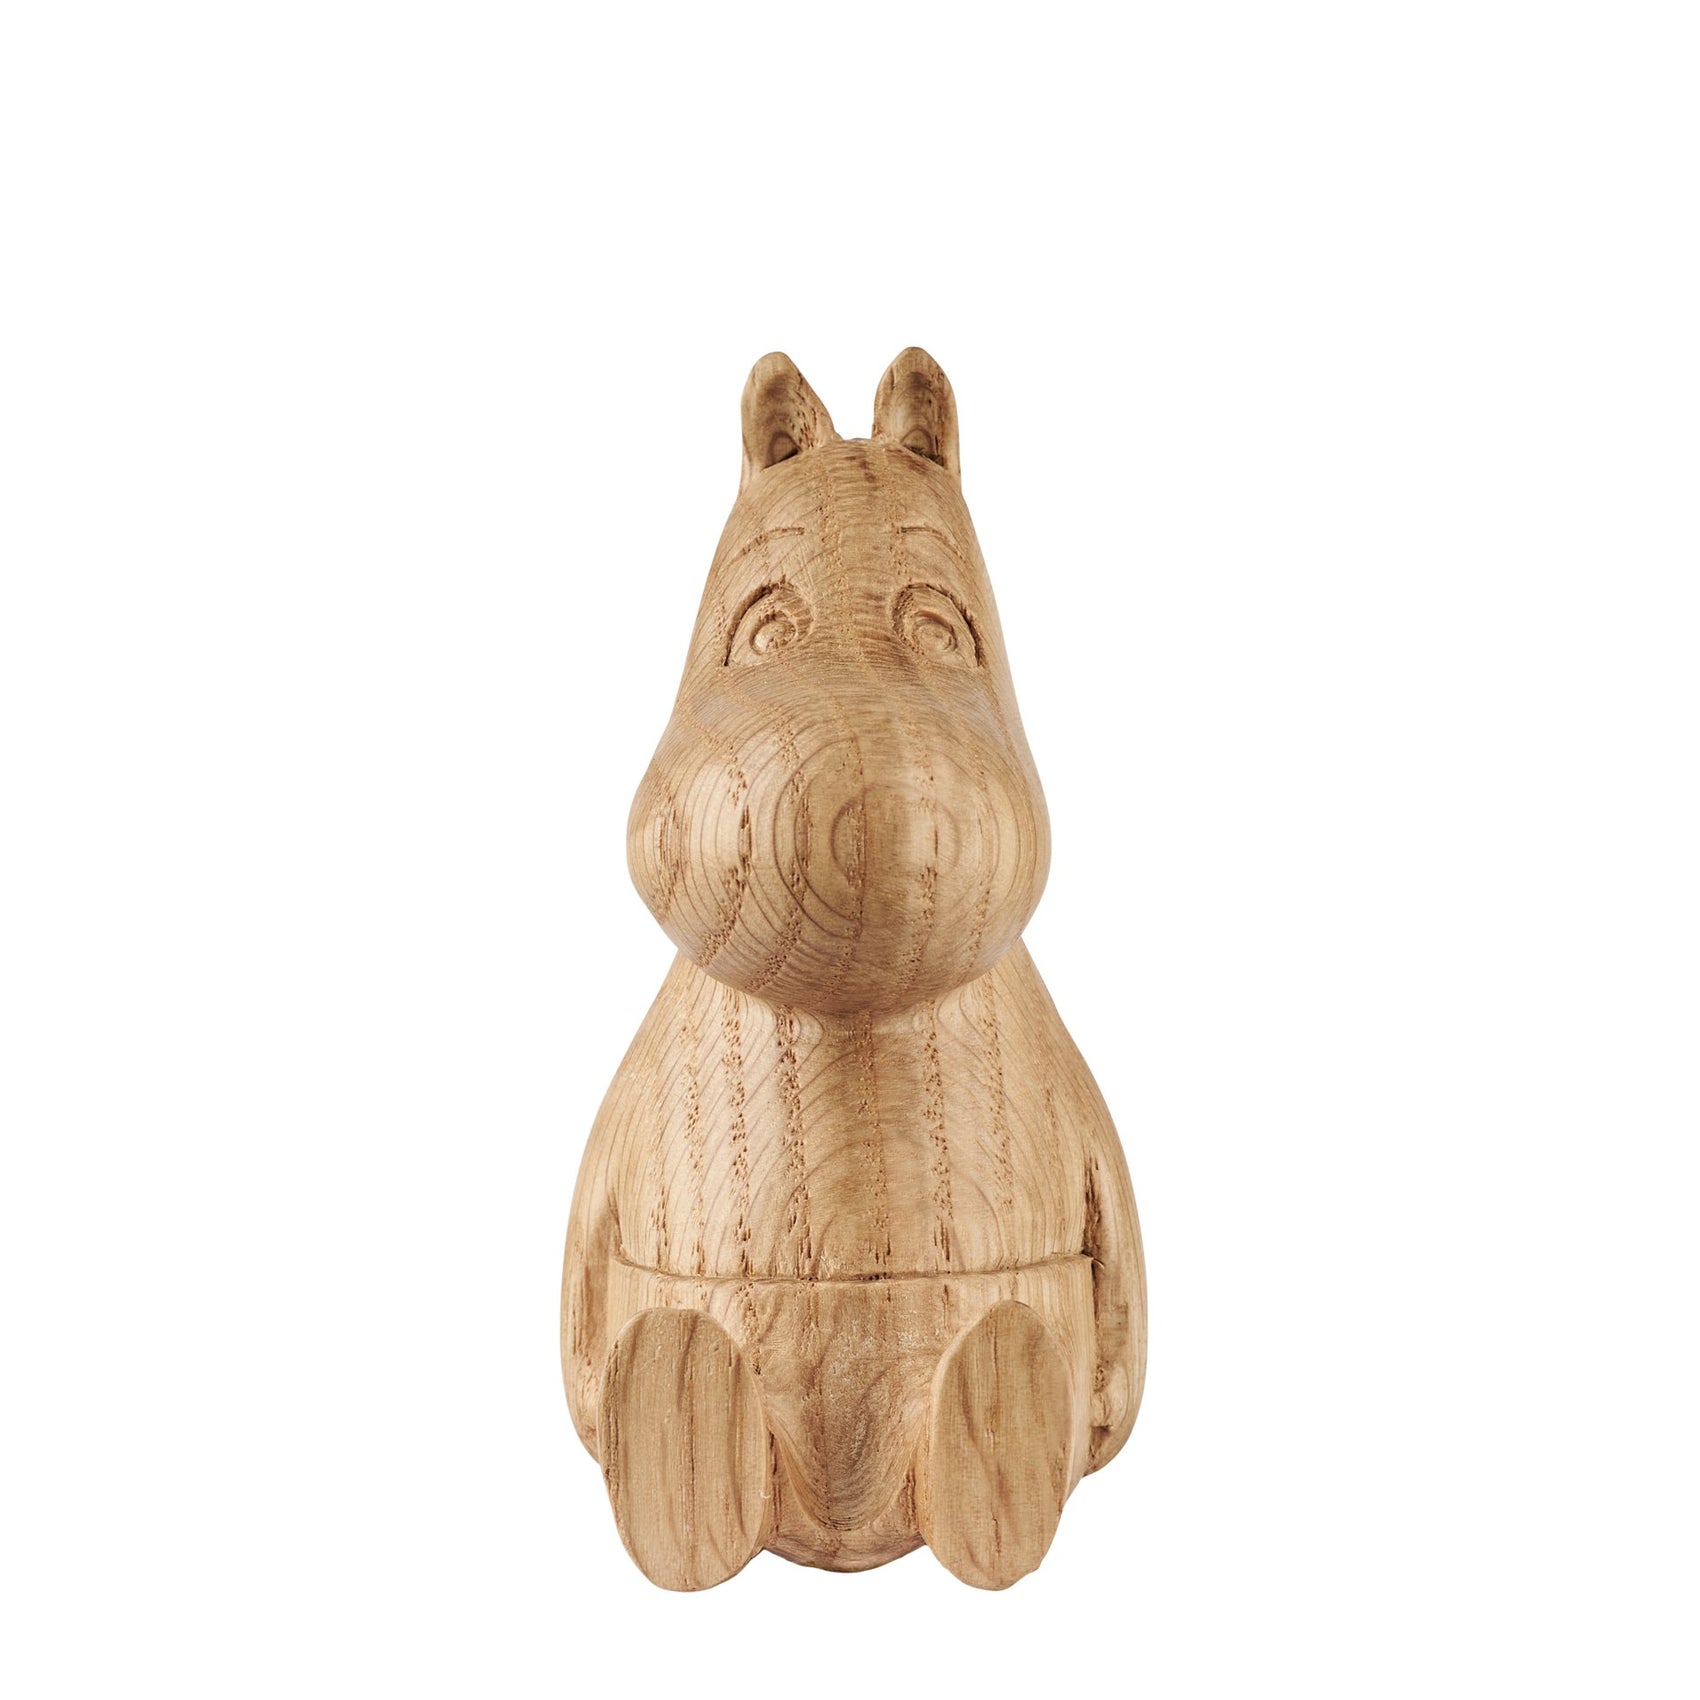 The Moomin wooden figure oak, Moomin 10cm